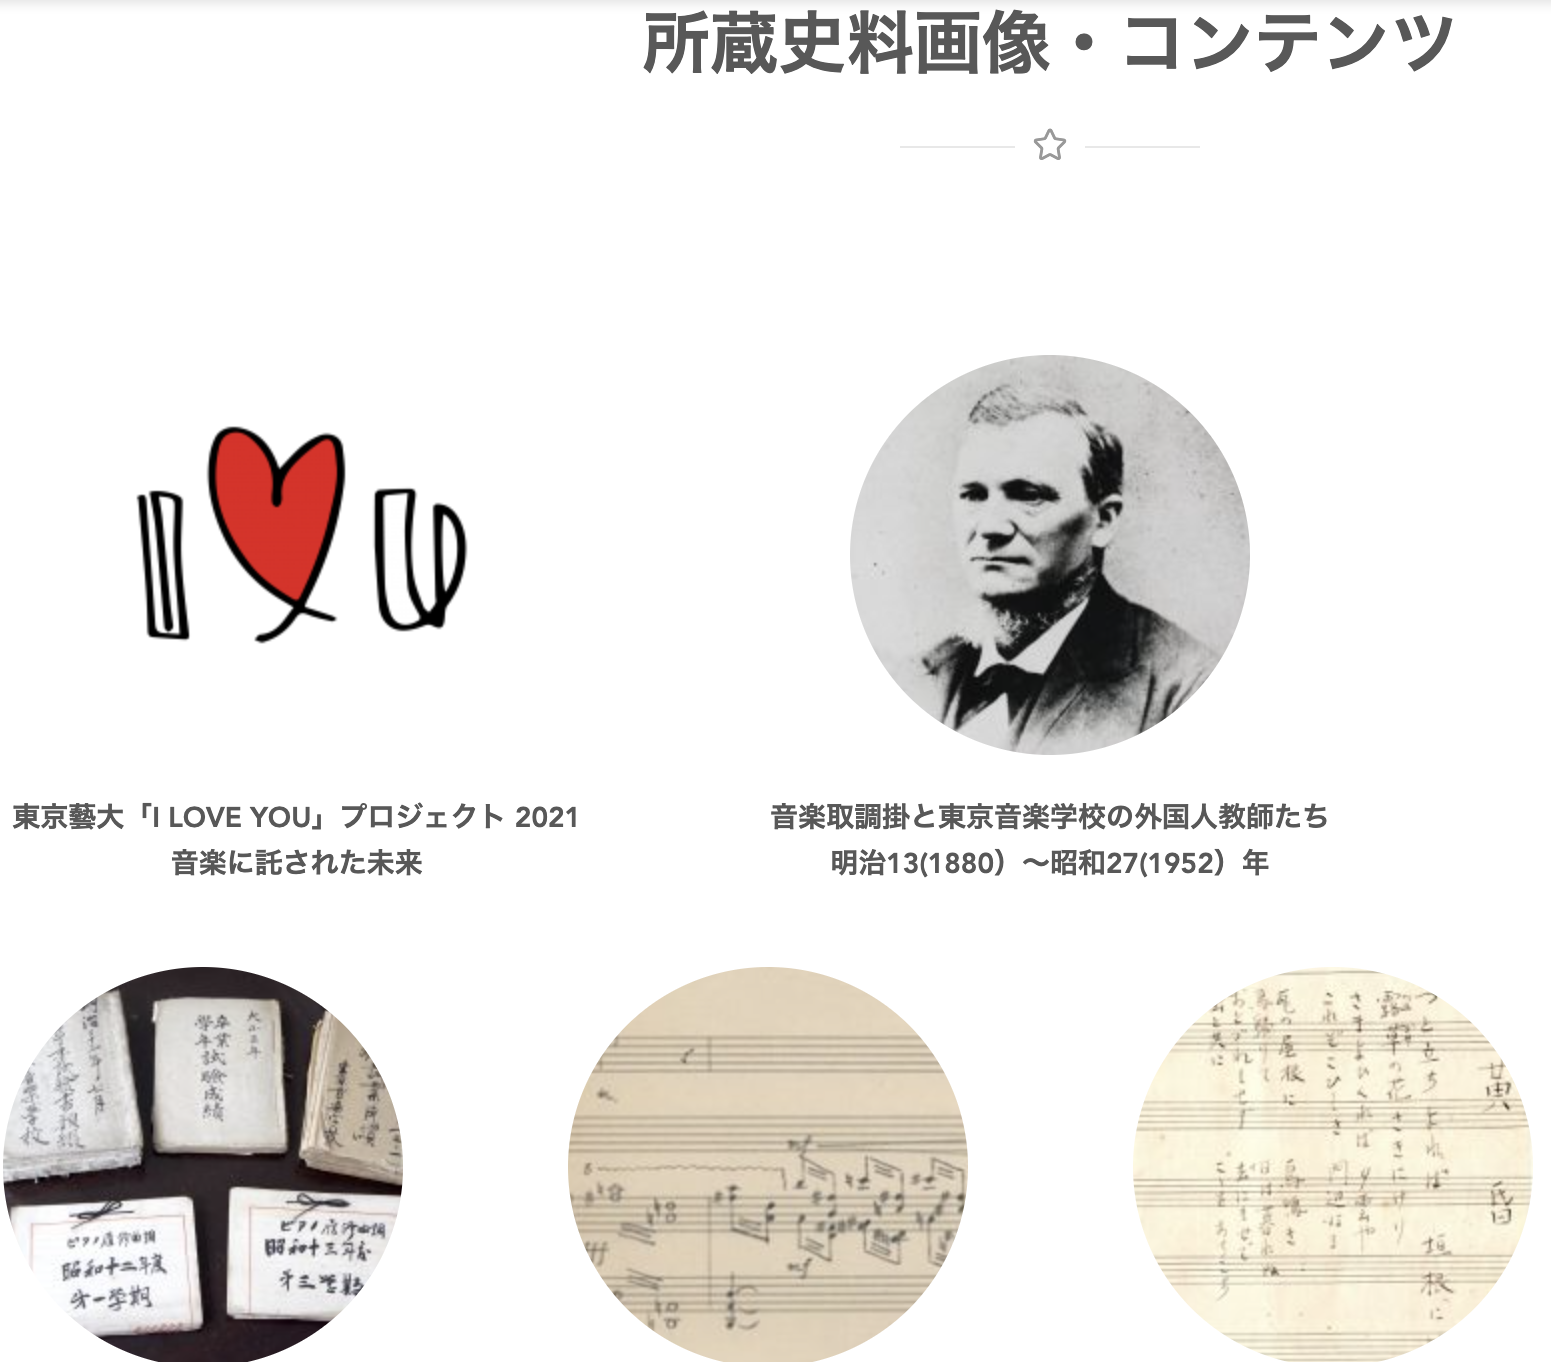 [ENG Below/新コンテンツ公開] 東京藝大「I LOVE YOU」プロジェクト2021  音楽に託された未来 ─東京音楽学校のアーカイブズ史料より─